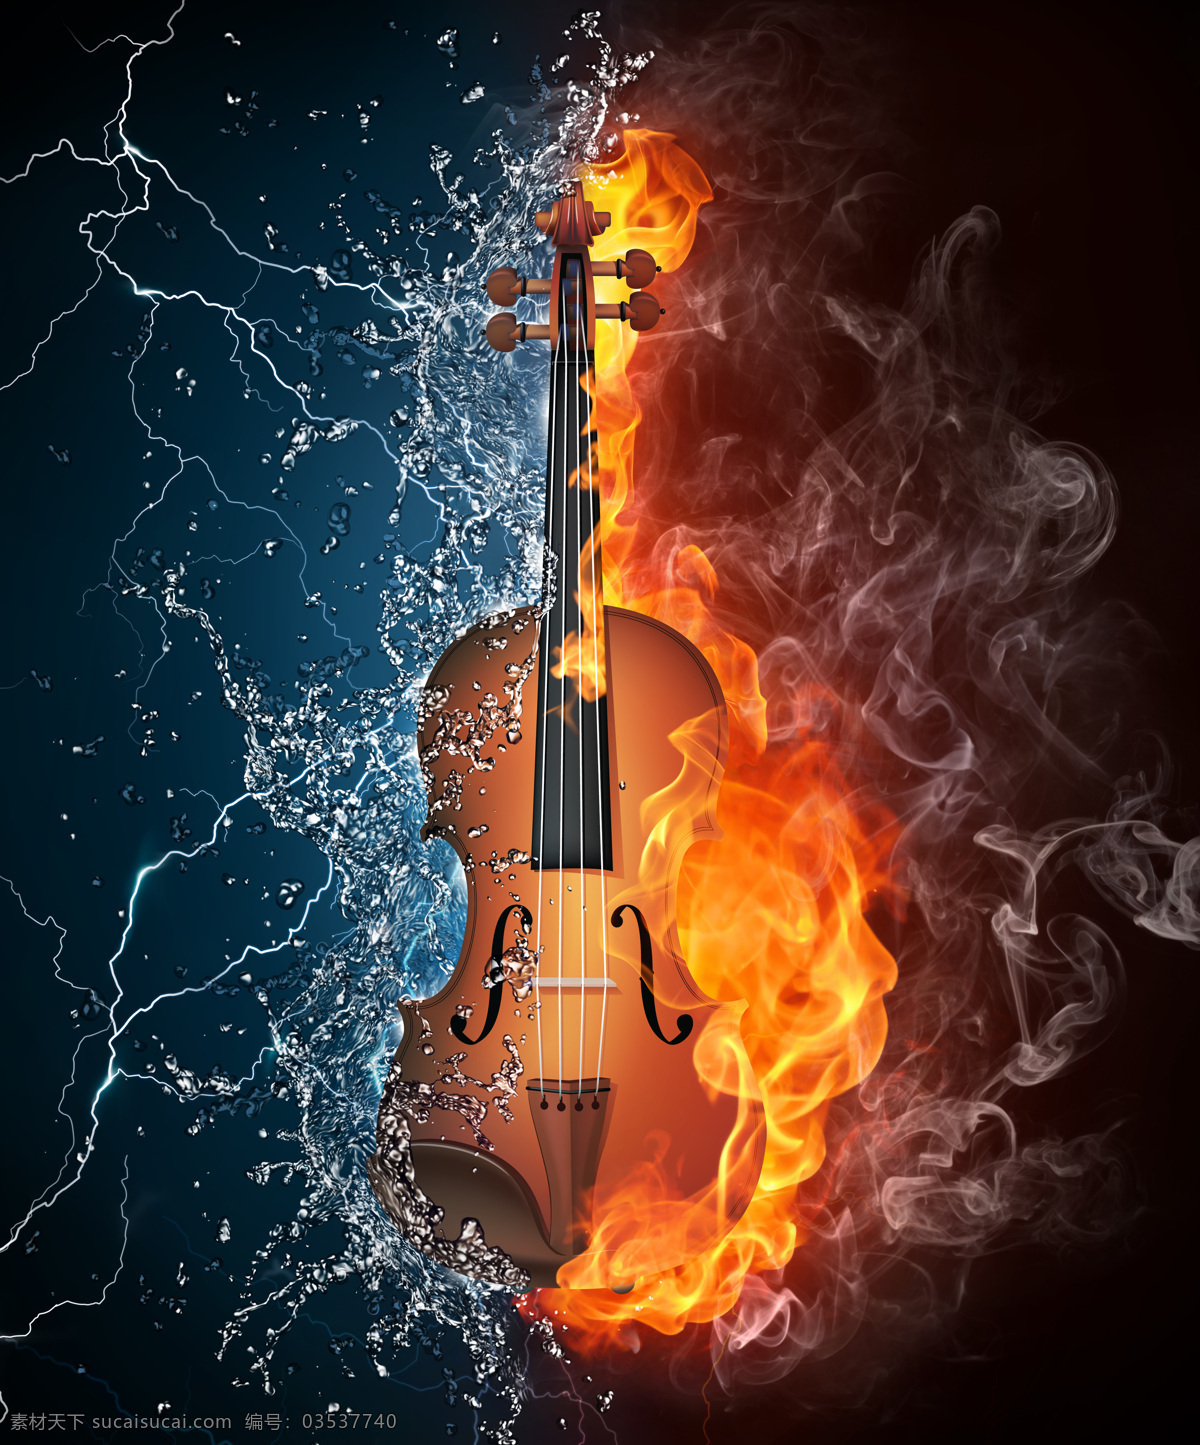 火苗 火焰 燃烧 生活百科 生活用品 水滴 水花 水火 中 小提琴 设计素材 模板下载 火舞 烟雾 水珠